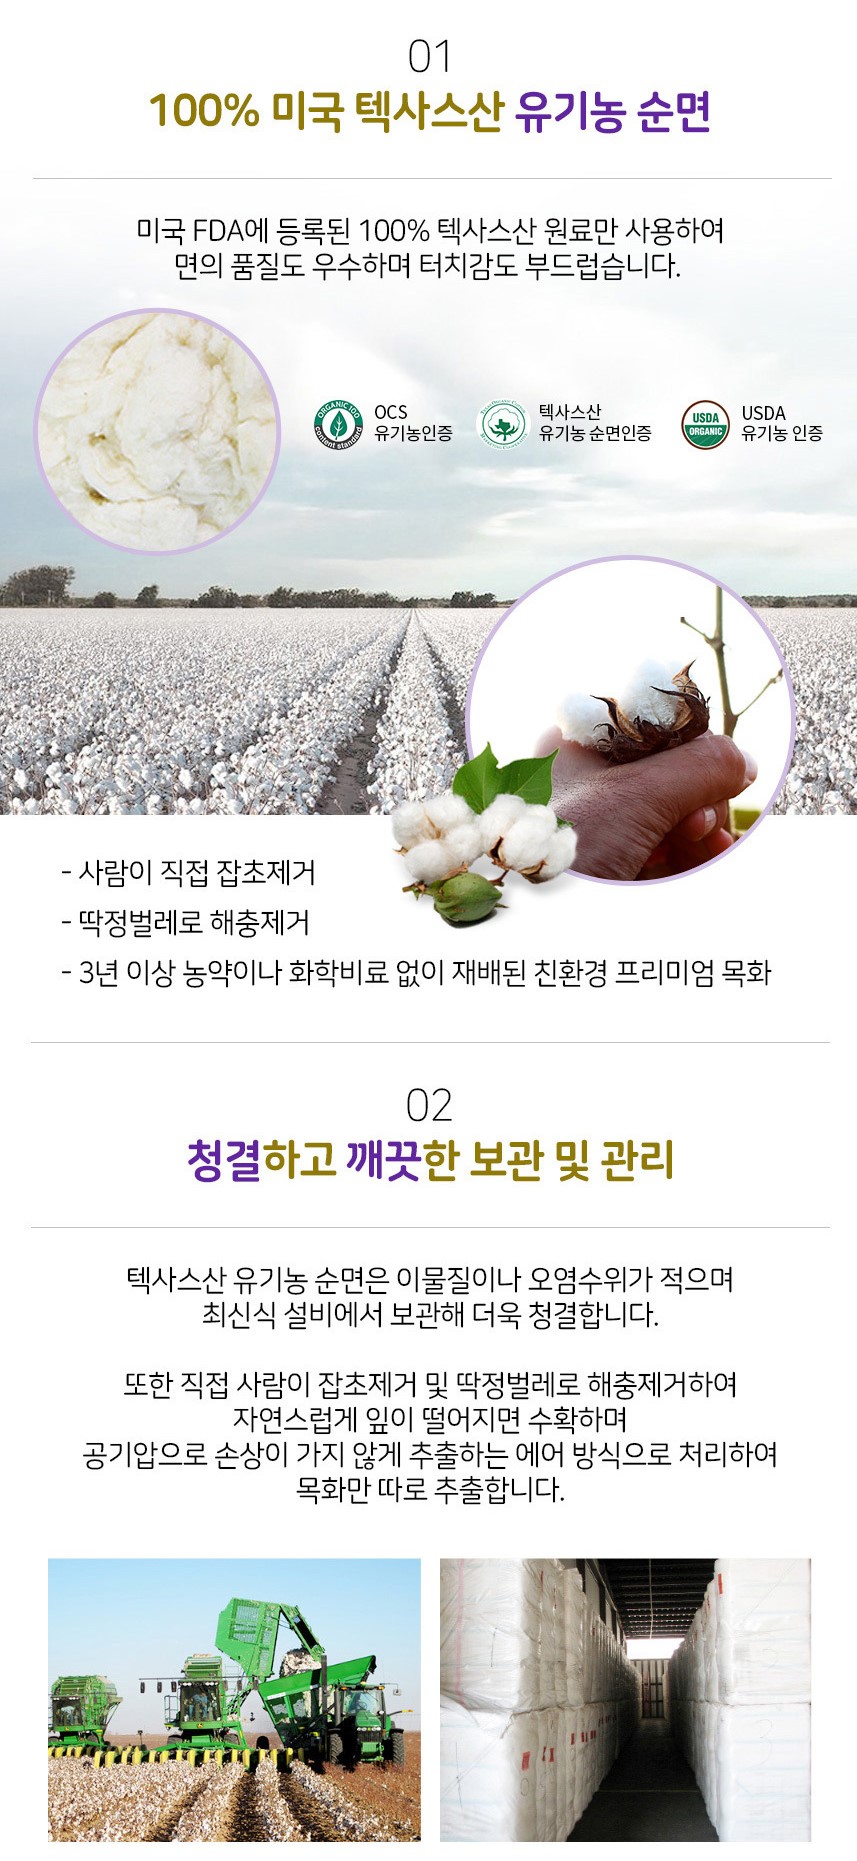 韓國食品-[Organic Bon] Gold Organic Cotton Sanitary Napkin [Small 220mm] (18pcs)